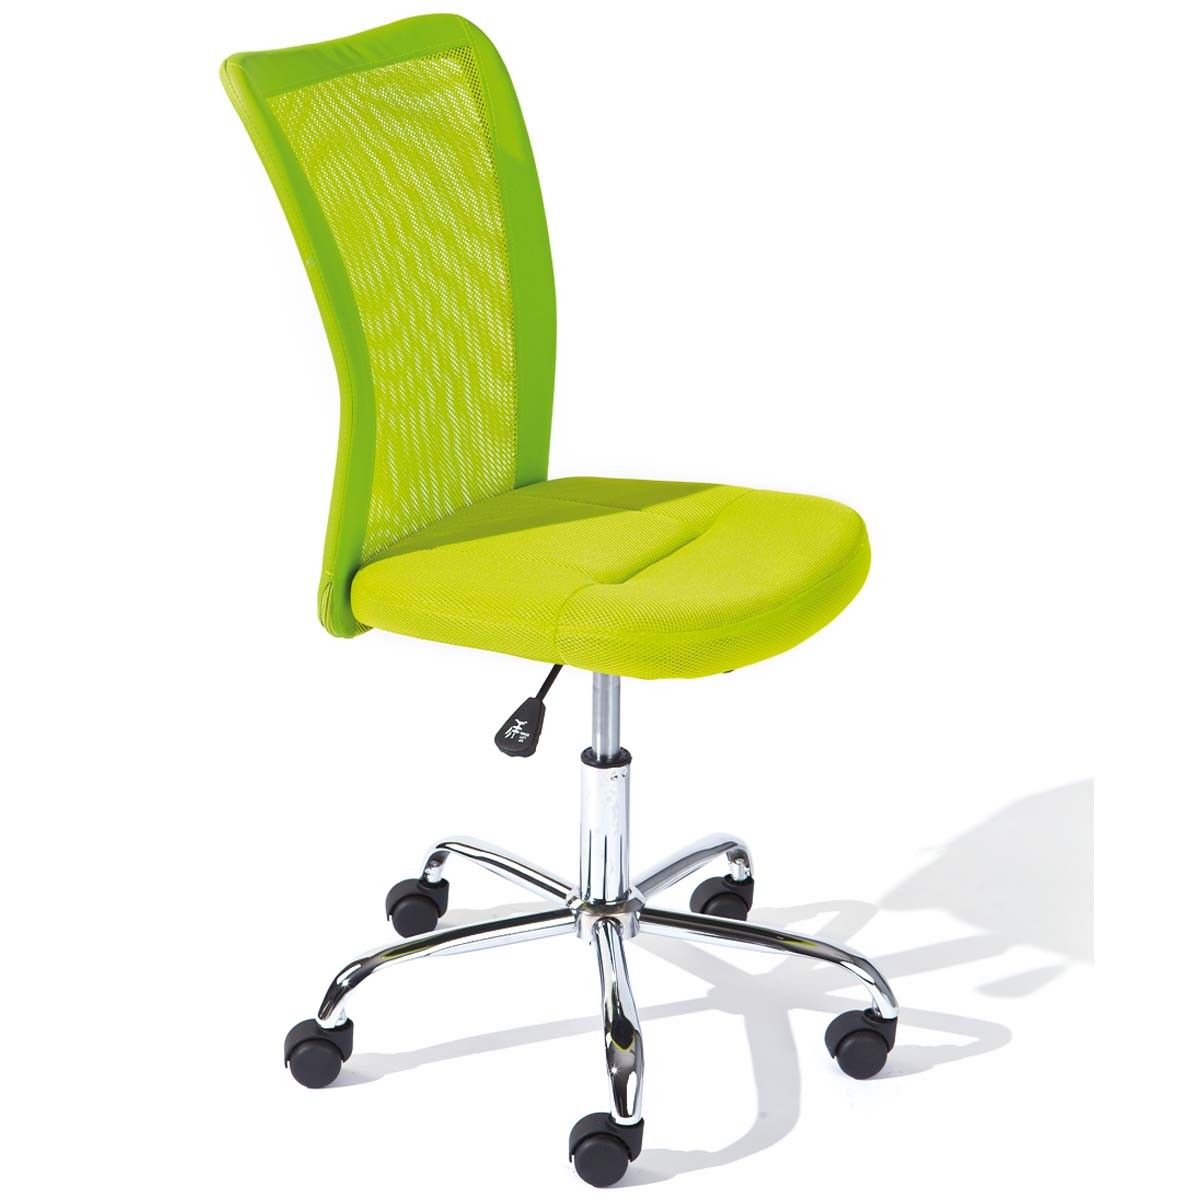 Chaise de bureau verte design pour enfant bonnie atylia Atylia | La